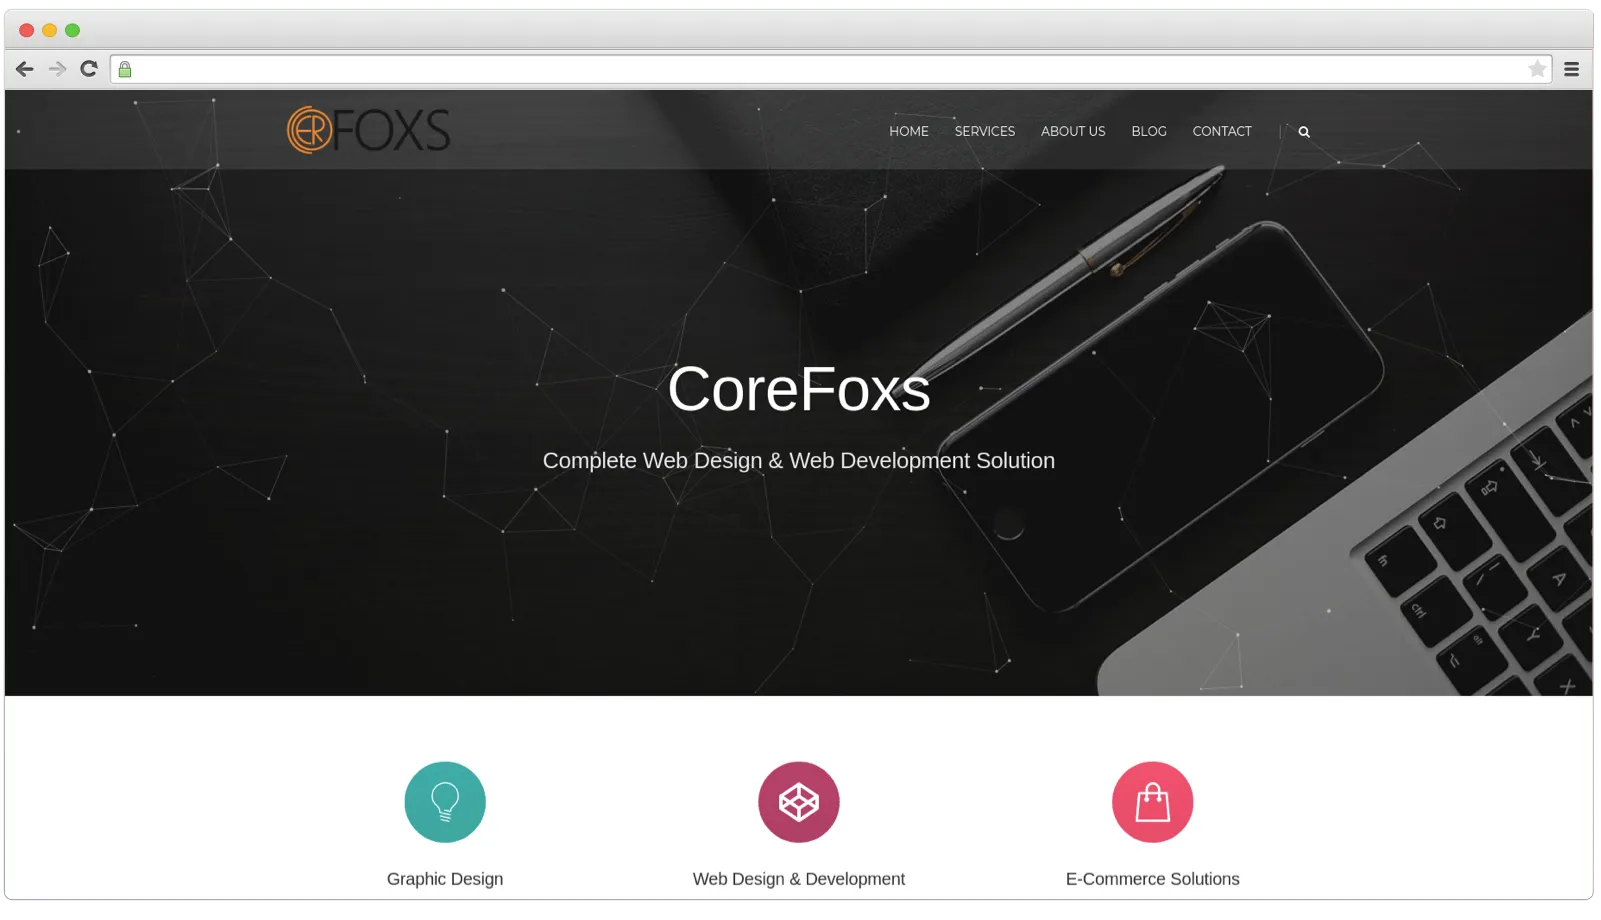 CoreFoxs